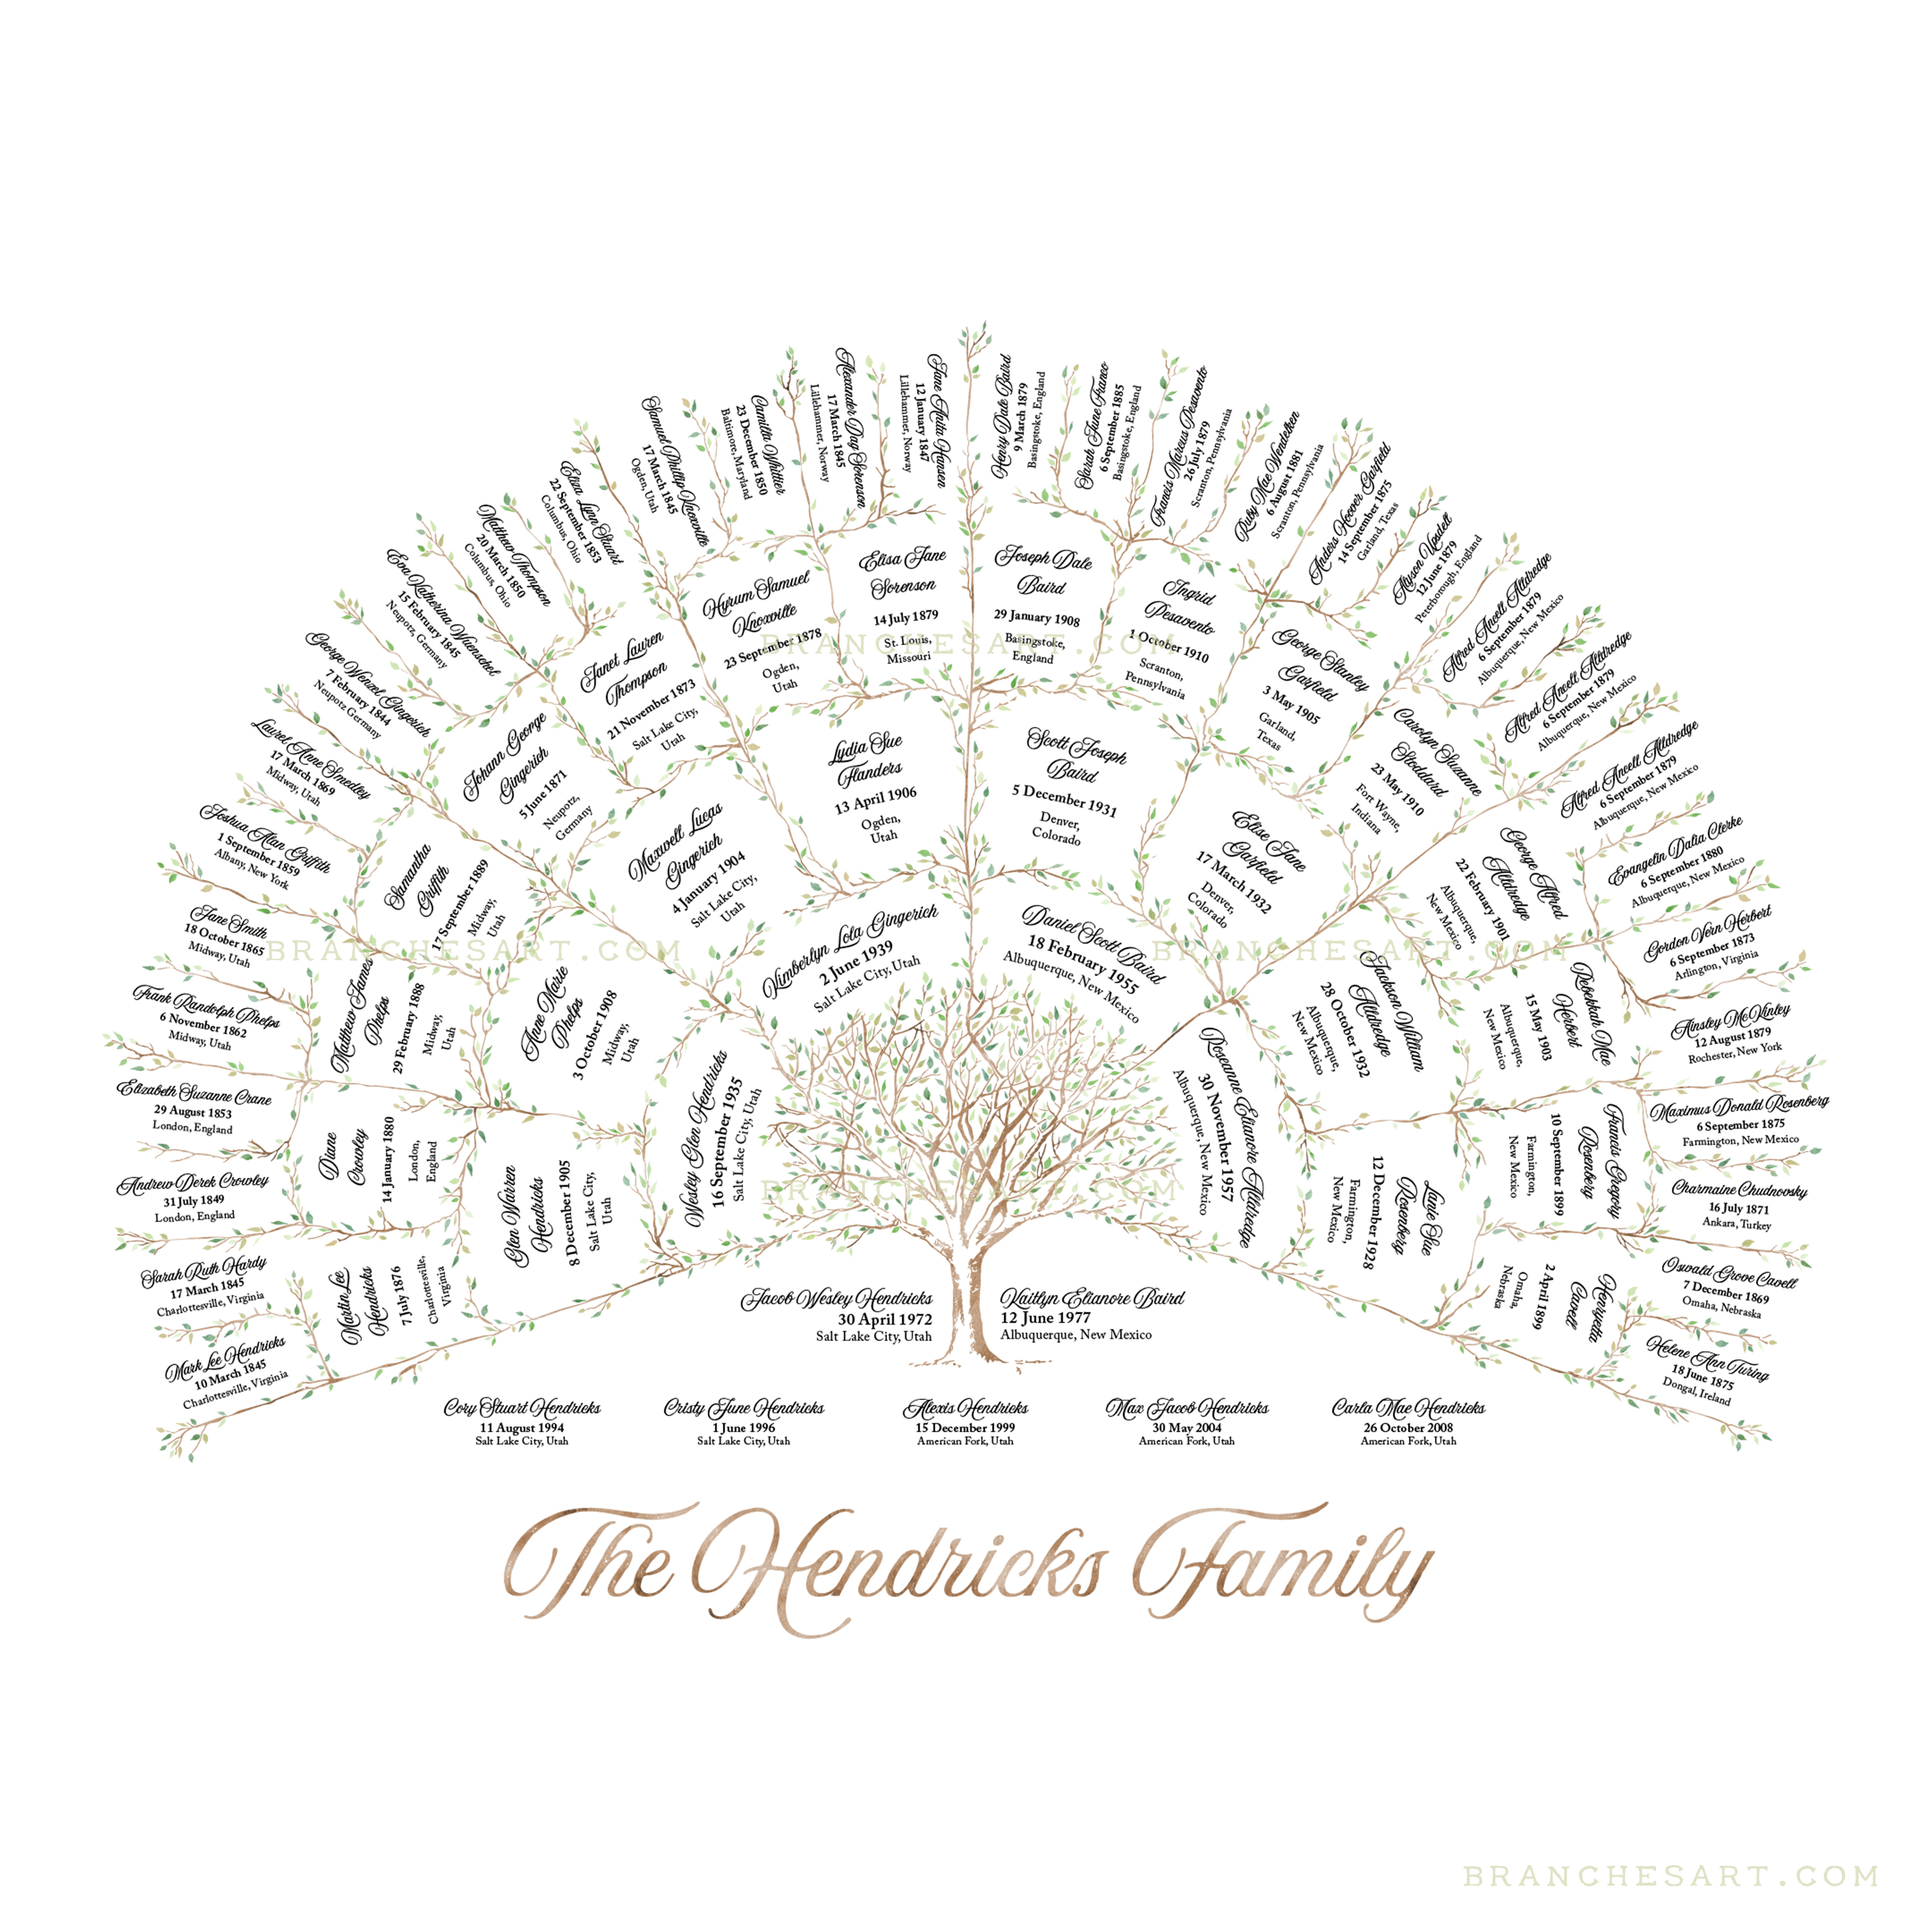 family generation tree